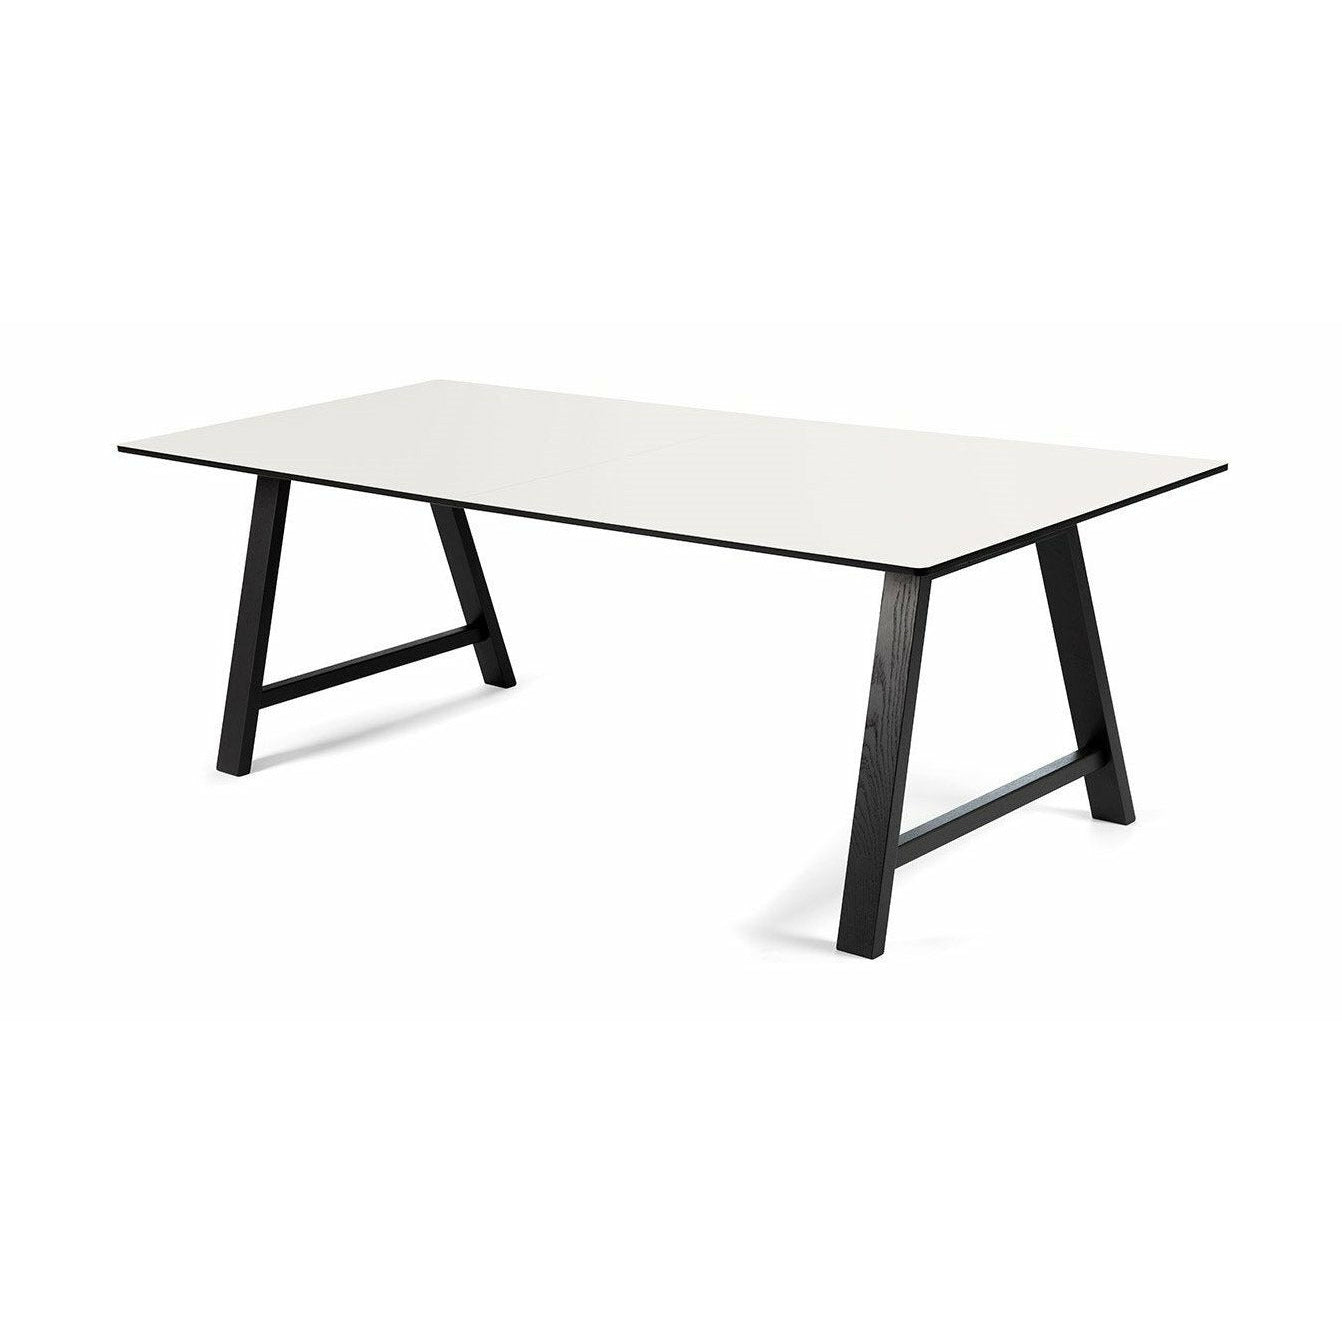 Andersen Furniture T1 udtræksbord, hvid laminat, sort stel, 180 cm